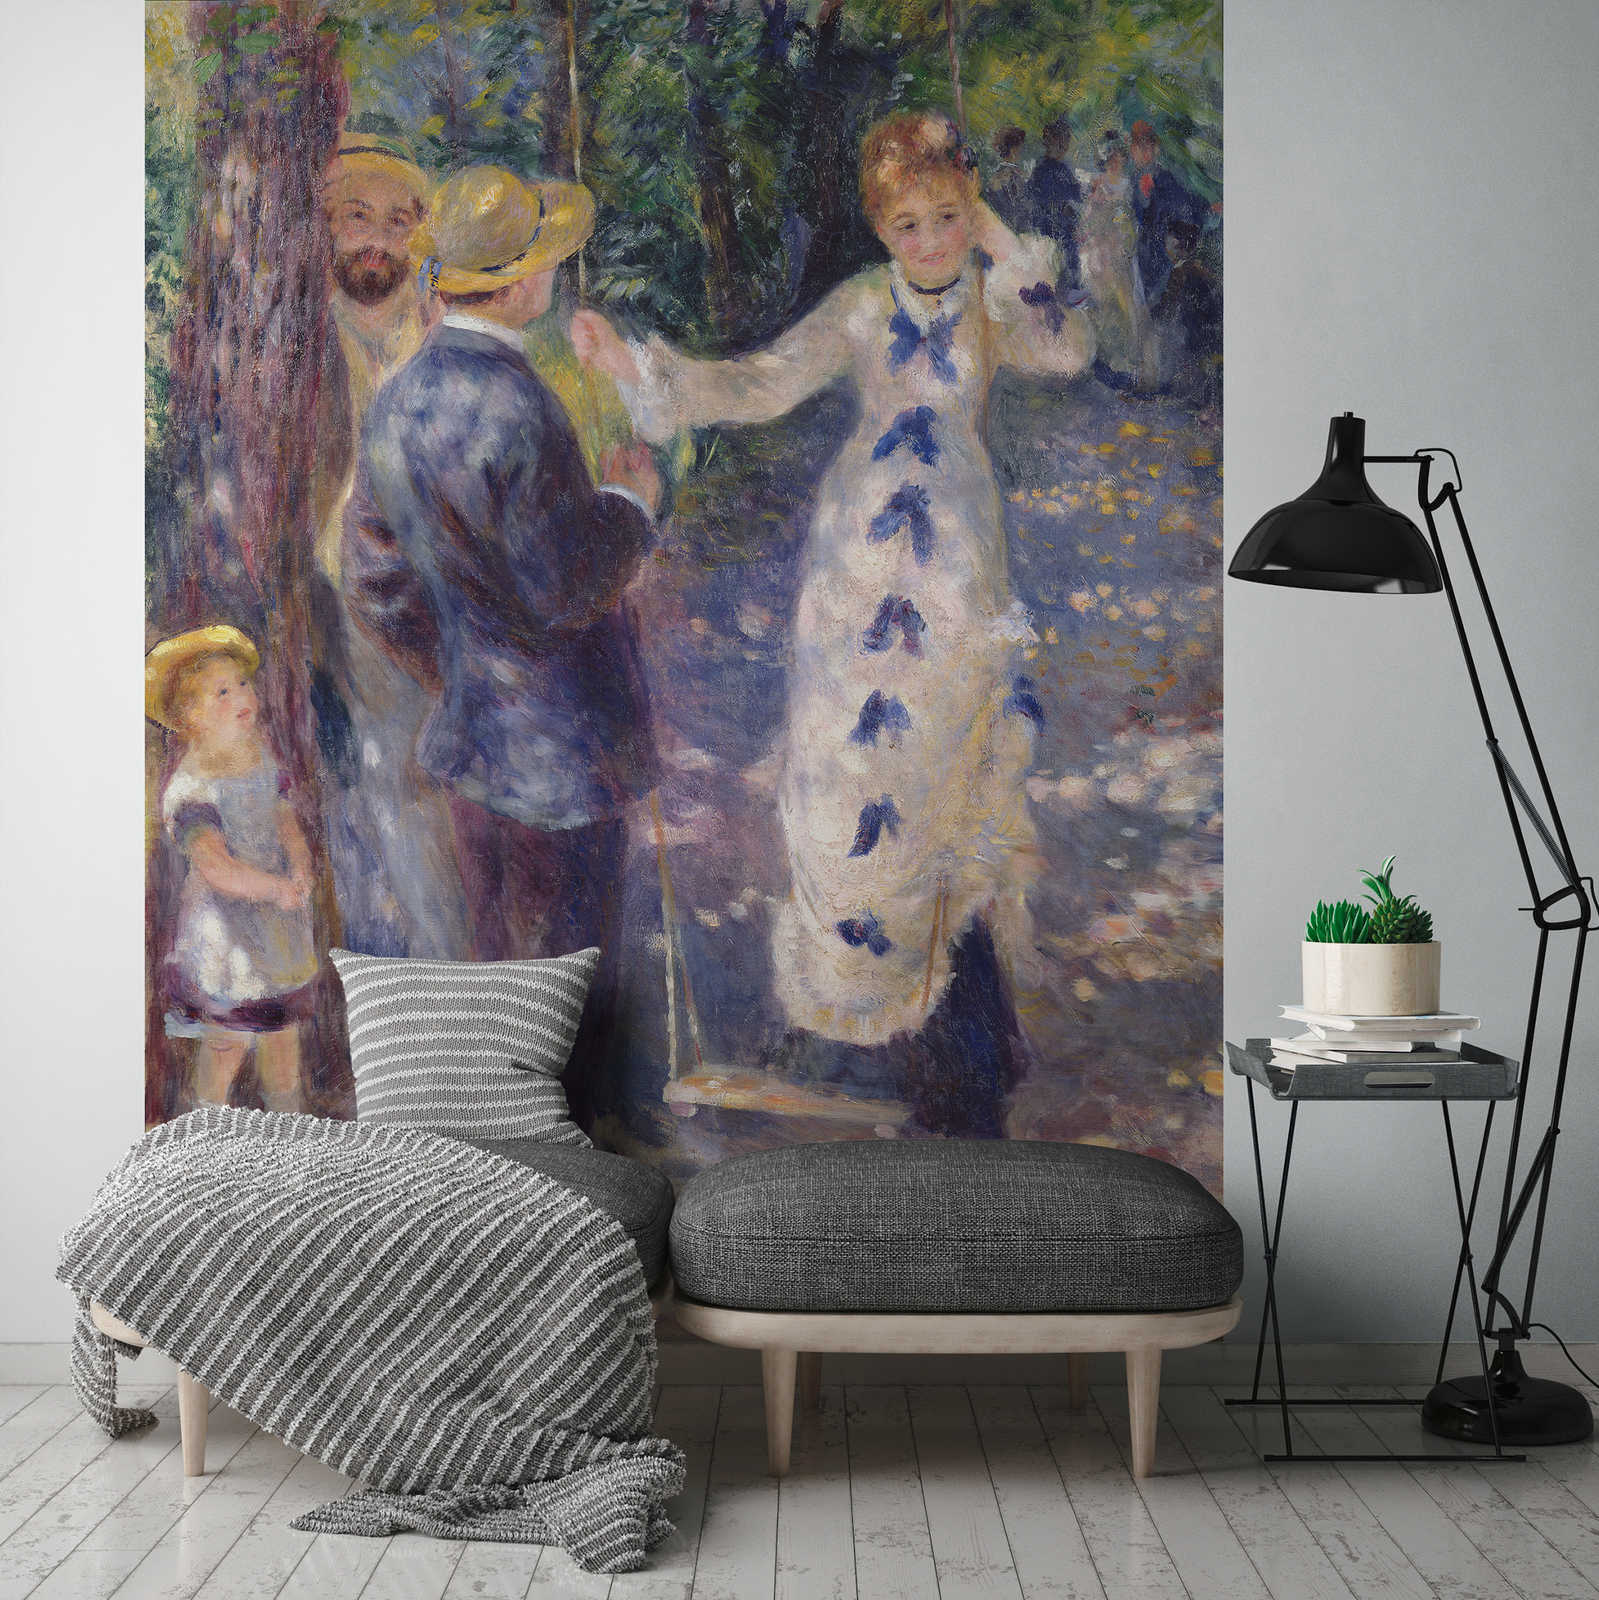             Mural "En el columpio" de Pierre Auguste Renoir
        